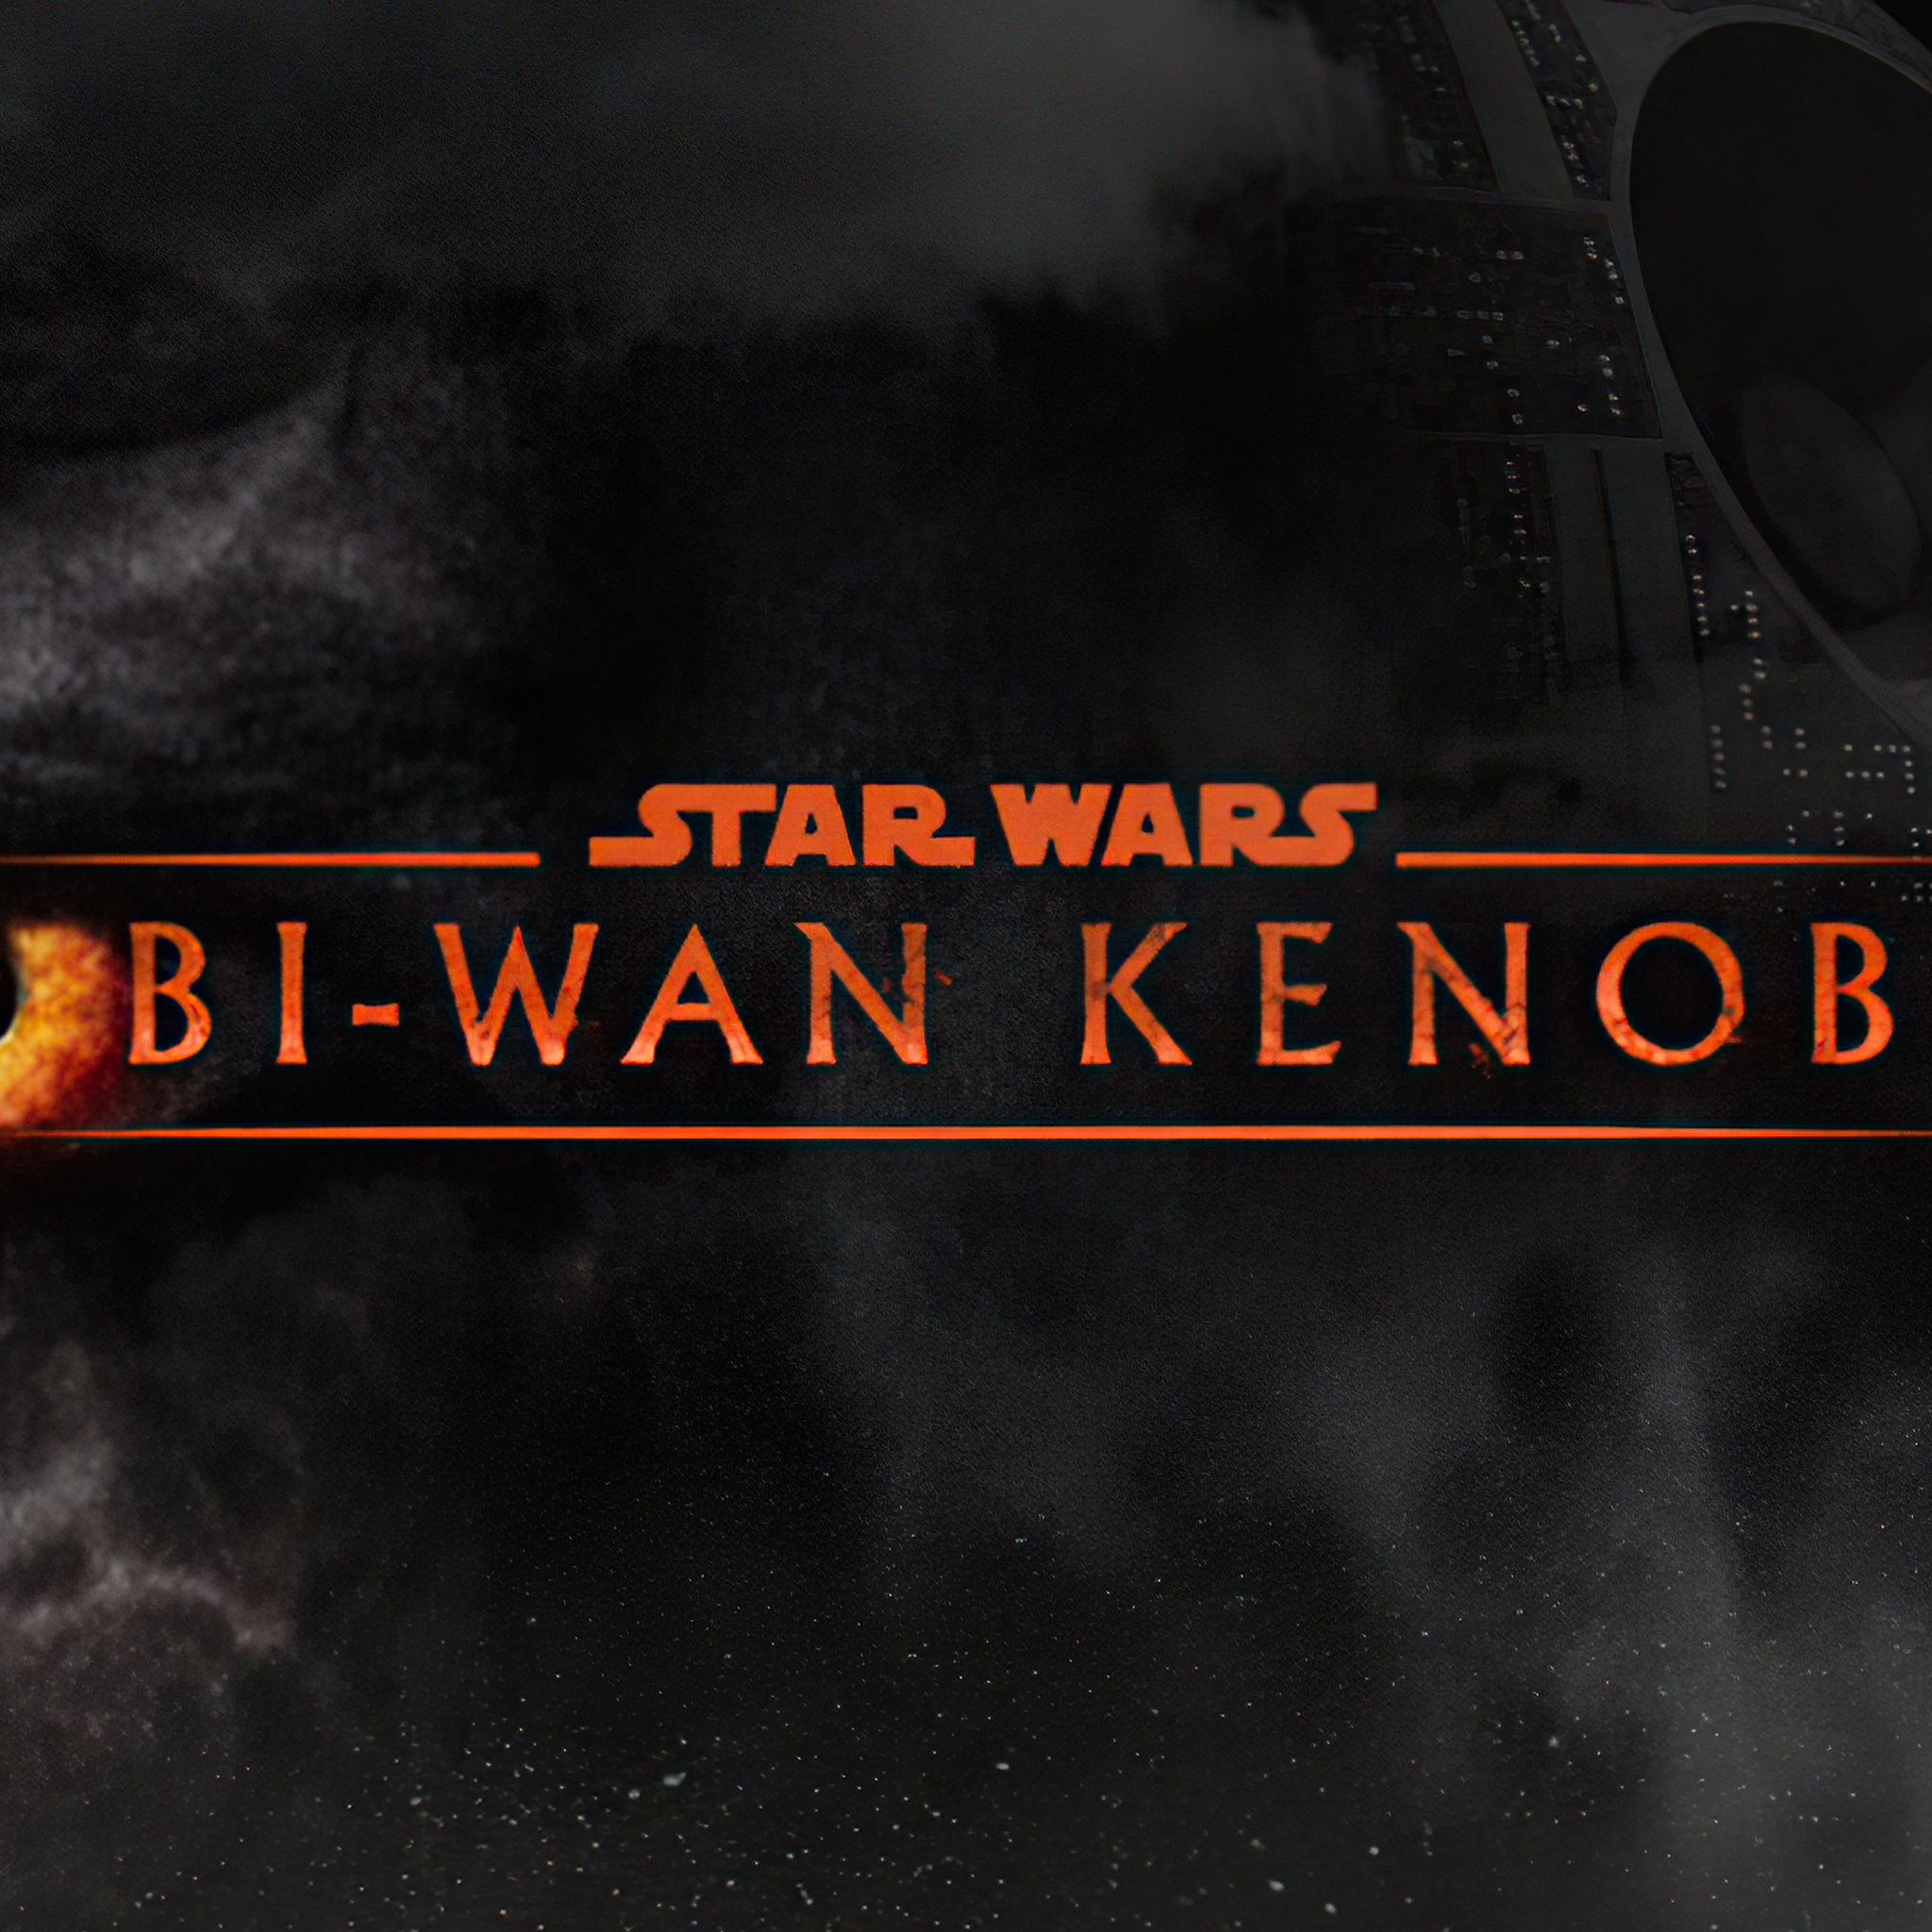 star-wars-obi-wan-kenobi-2022-5w.jpg